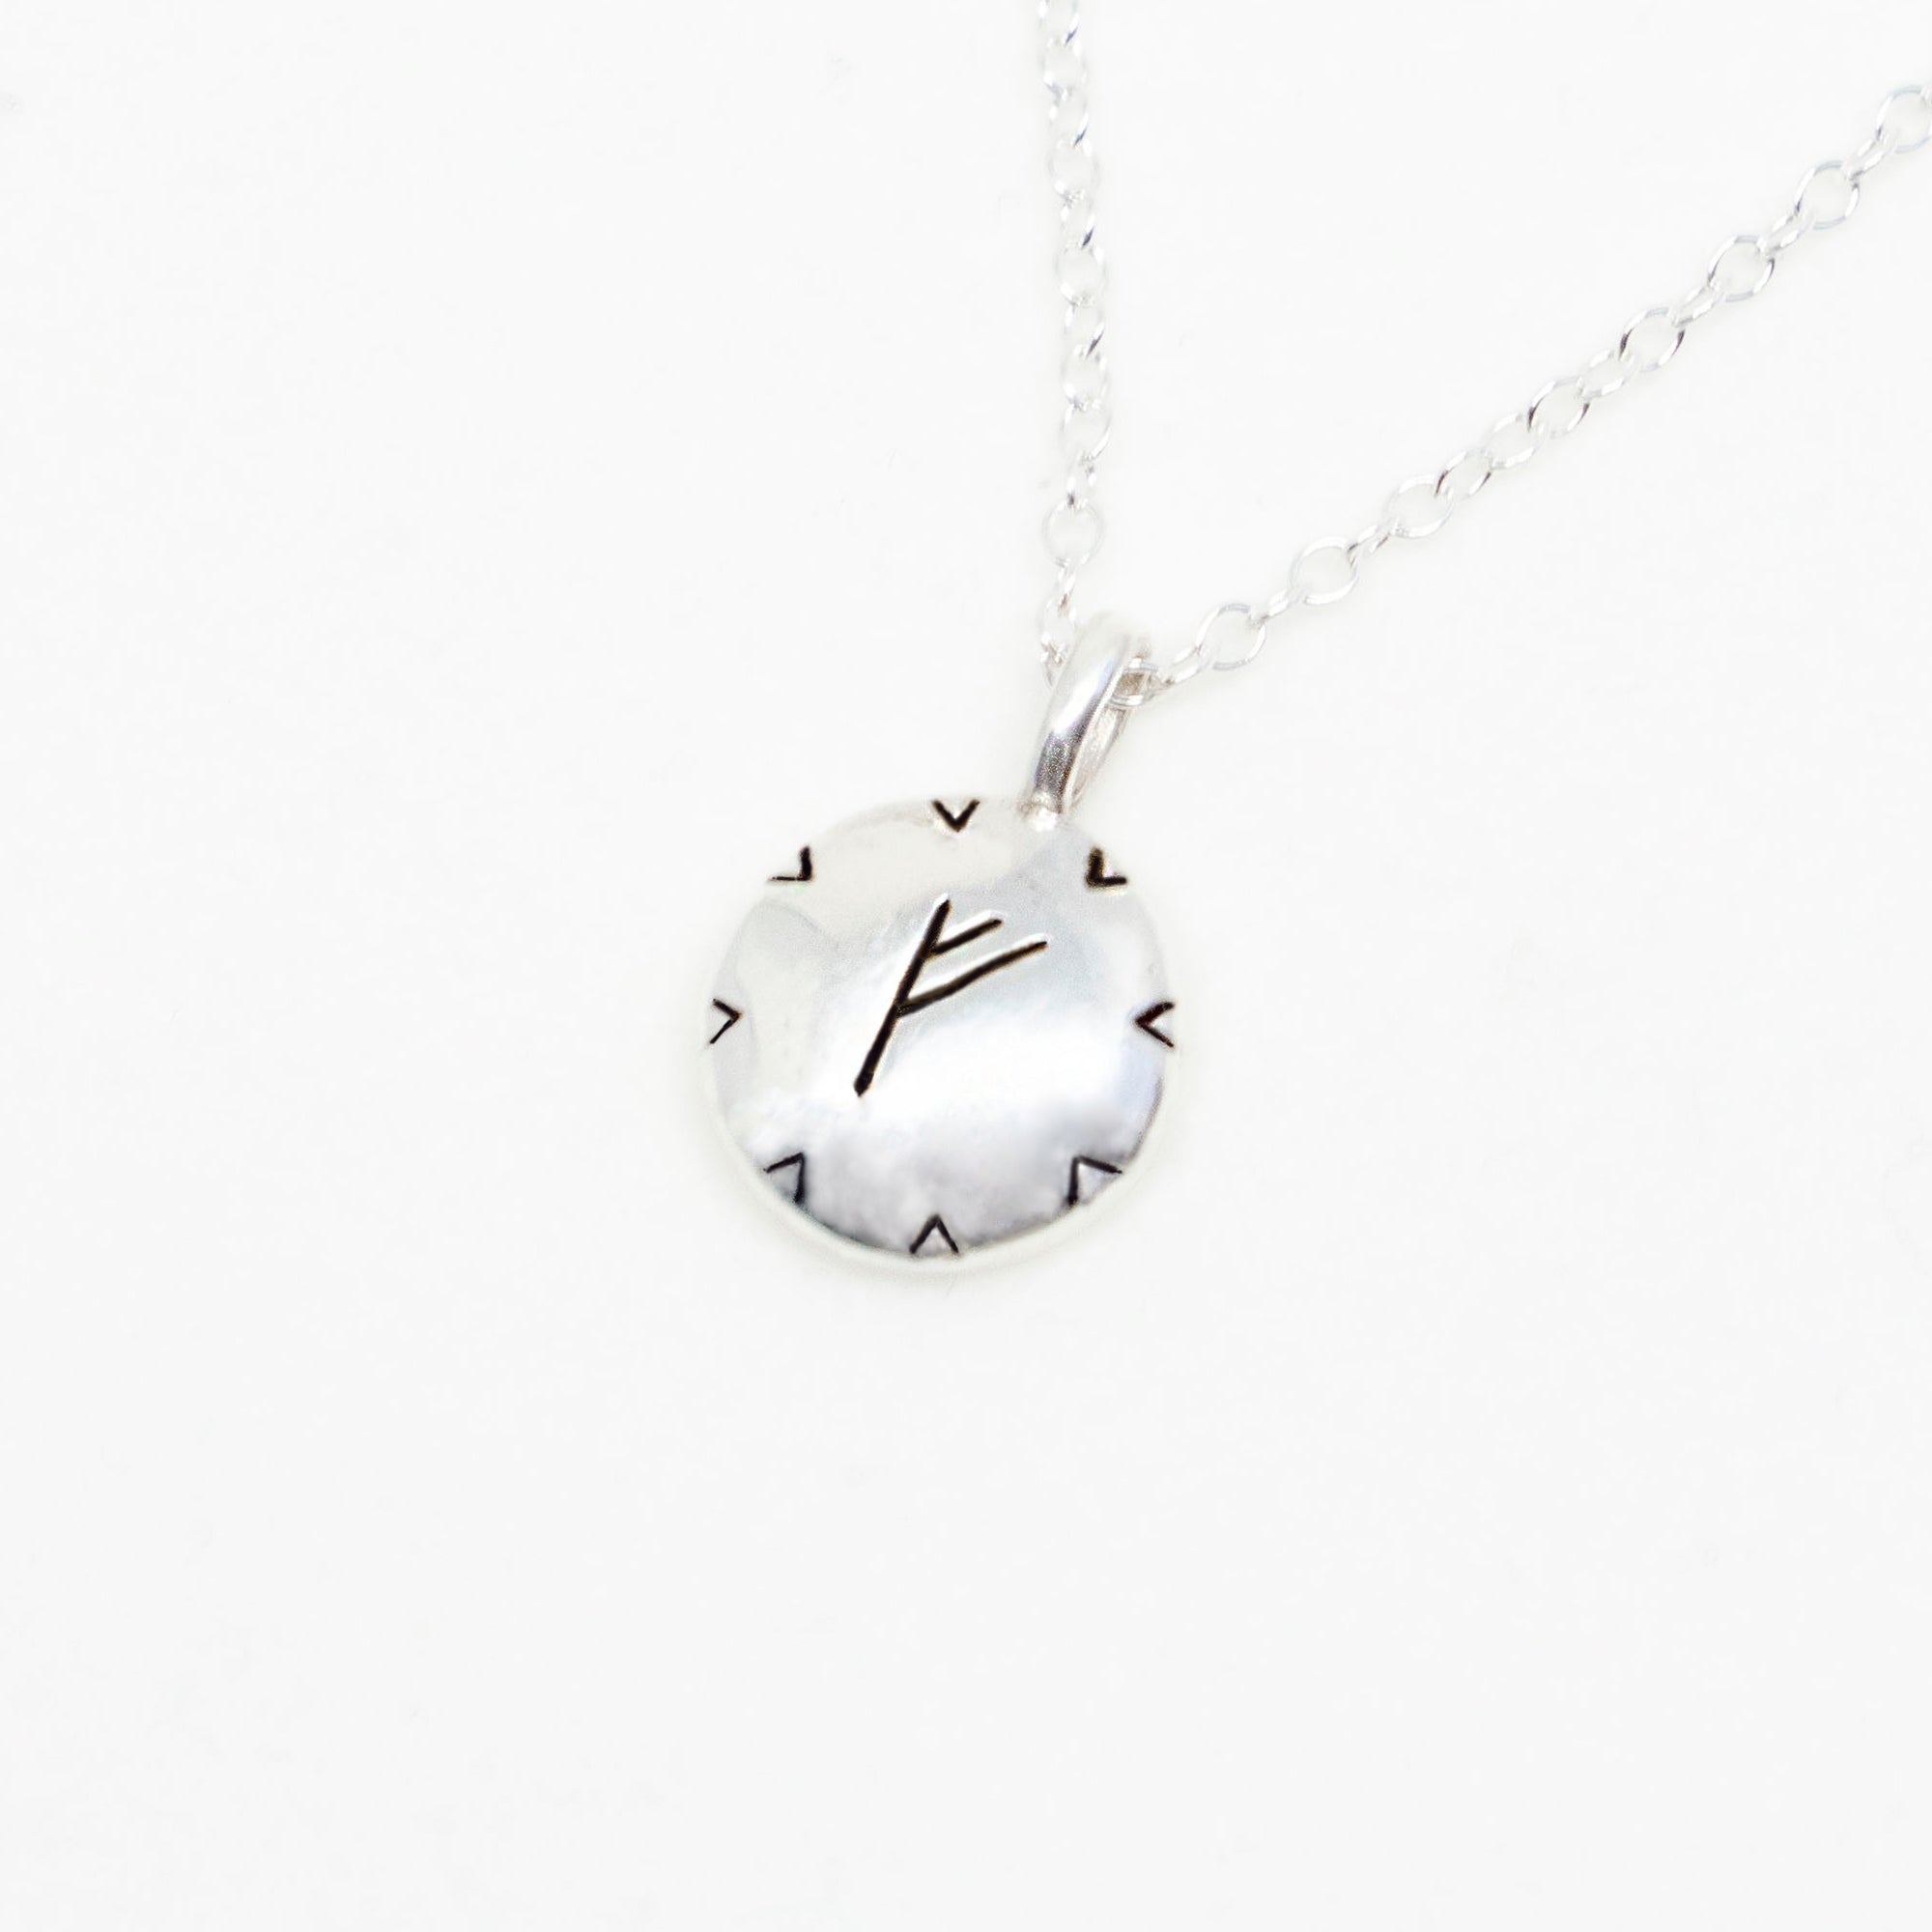 Freya Abundance Silver Necklace by Susan Ohrn Jewelry